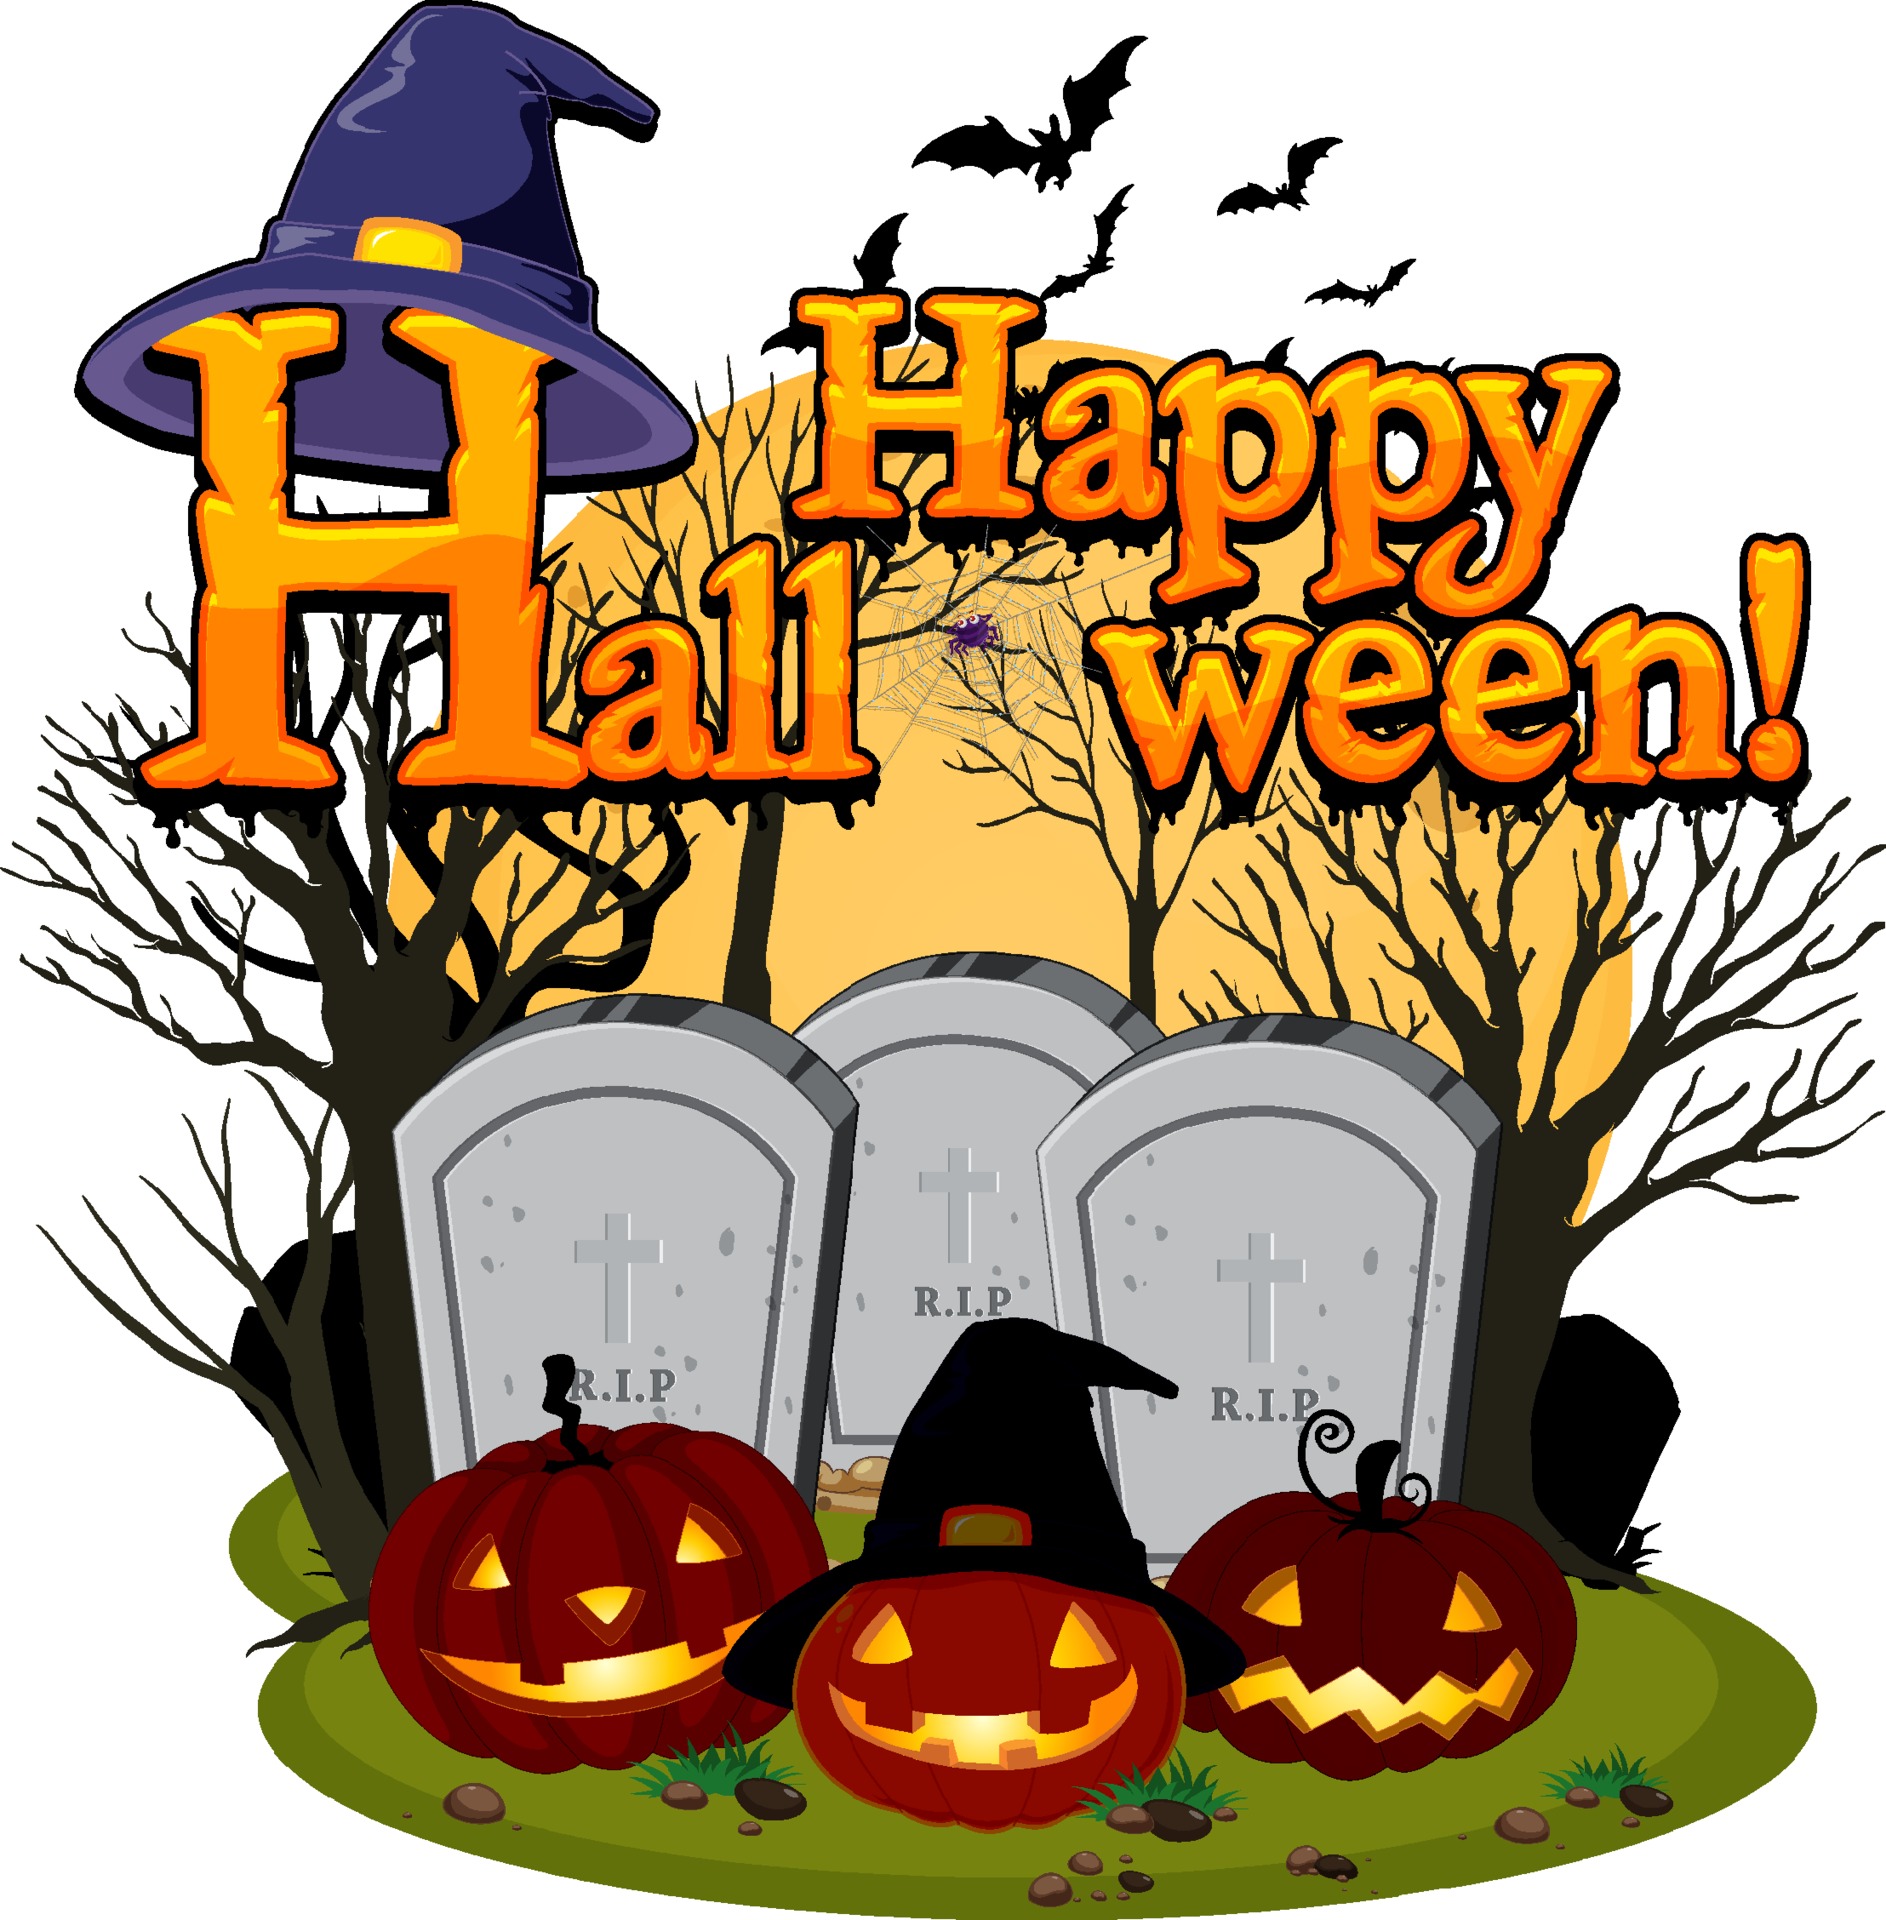 Ga trouwen wat betreft stap in happy halloween met jack-o'-lantern op kerkhof 3362535 - Download Free  Vectors, Vector Bestanden, Ontwerpen Templates